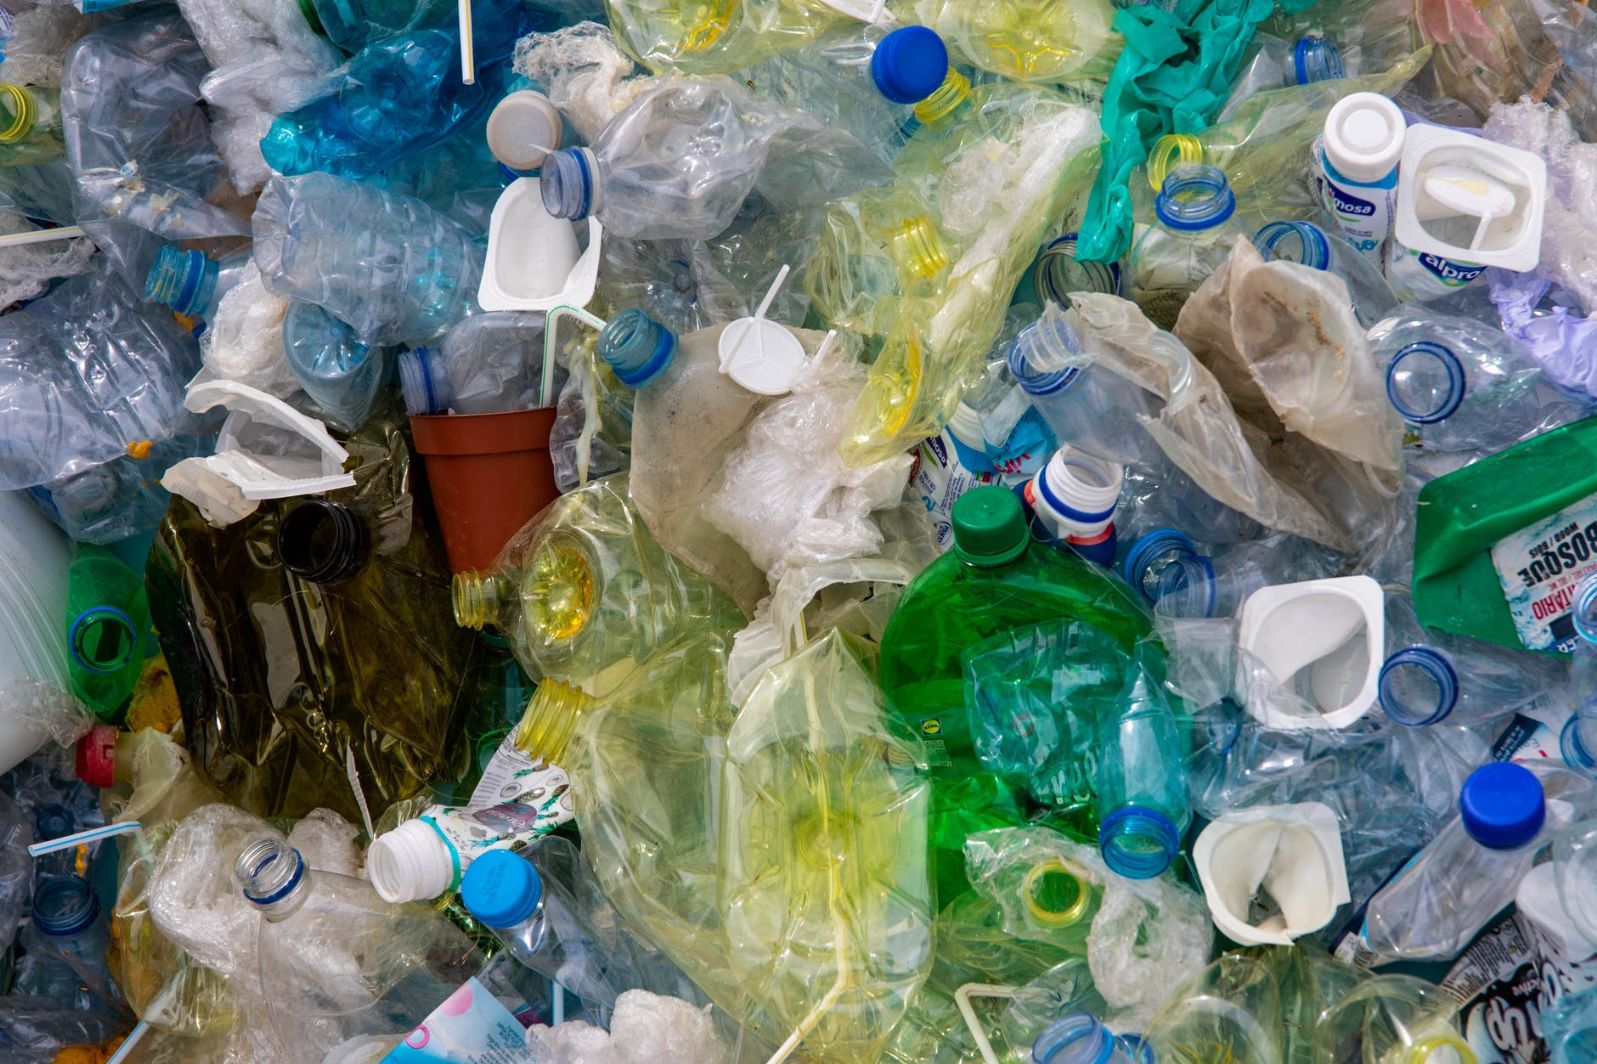 Conheça as instituições sociais que mais reciclaram em 2020